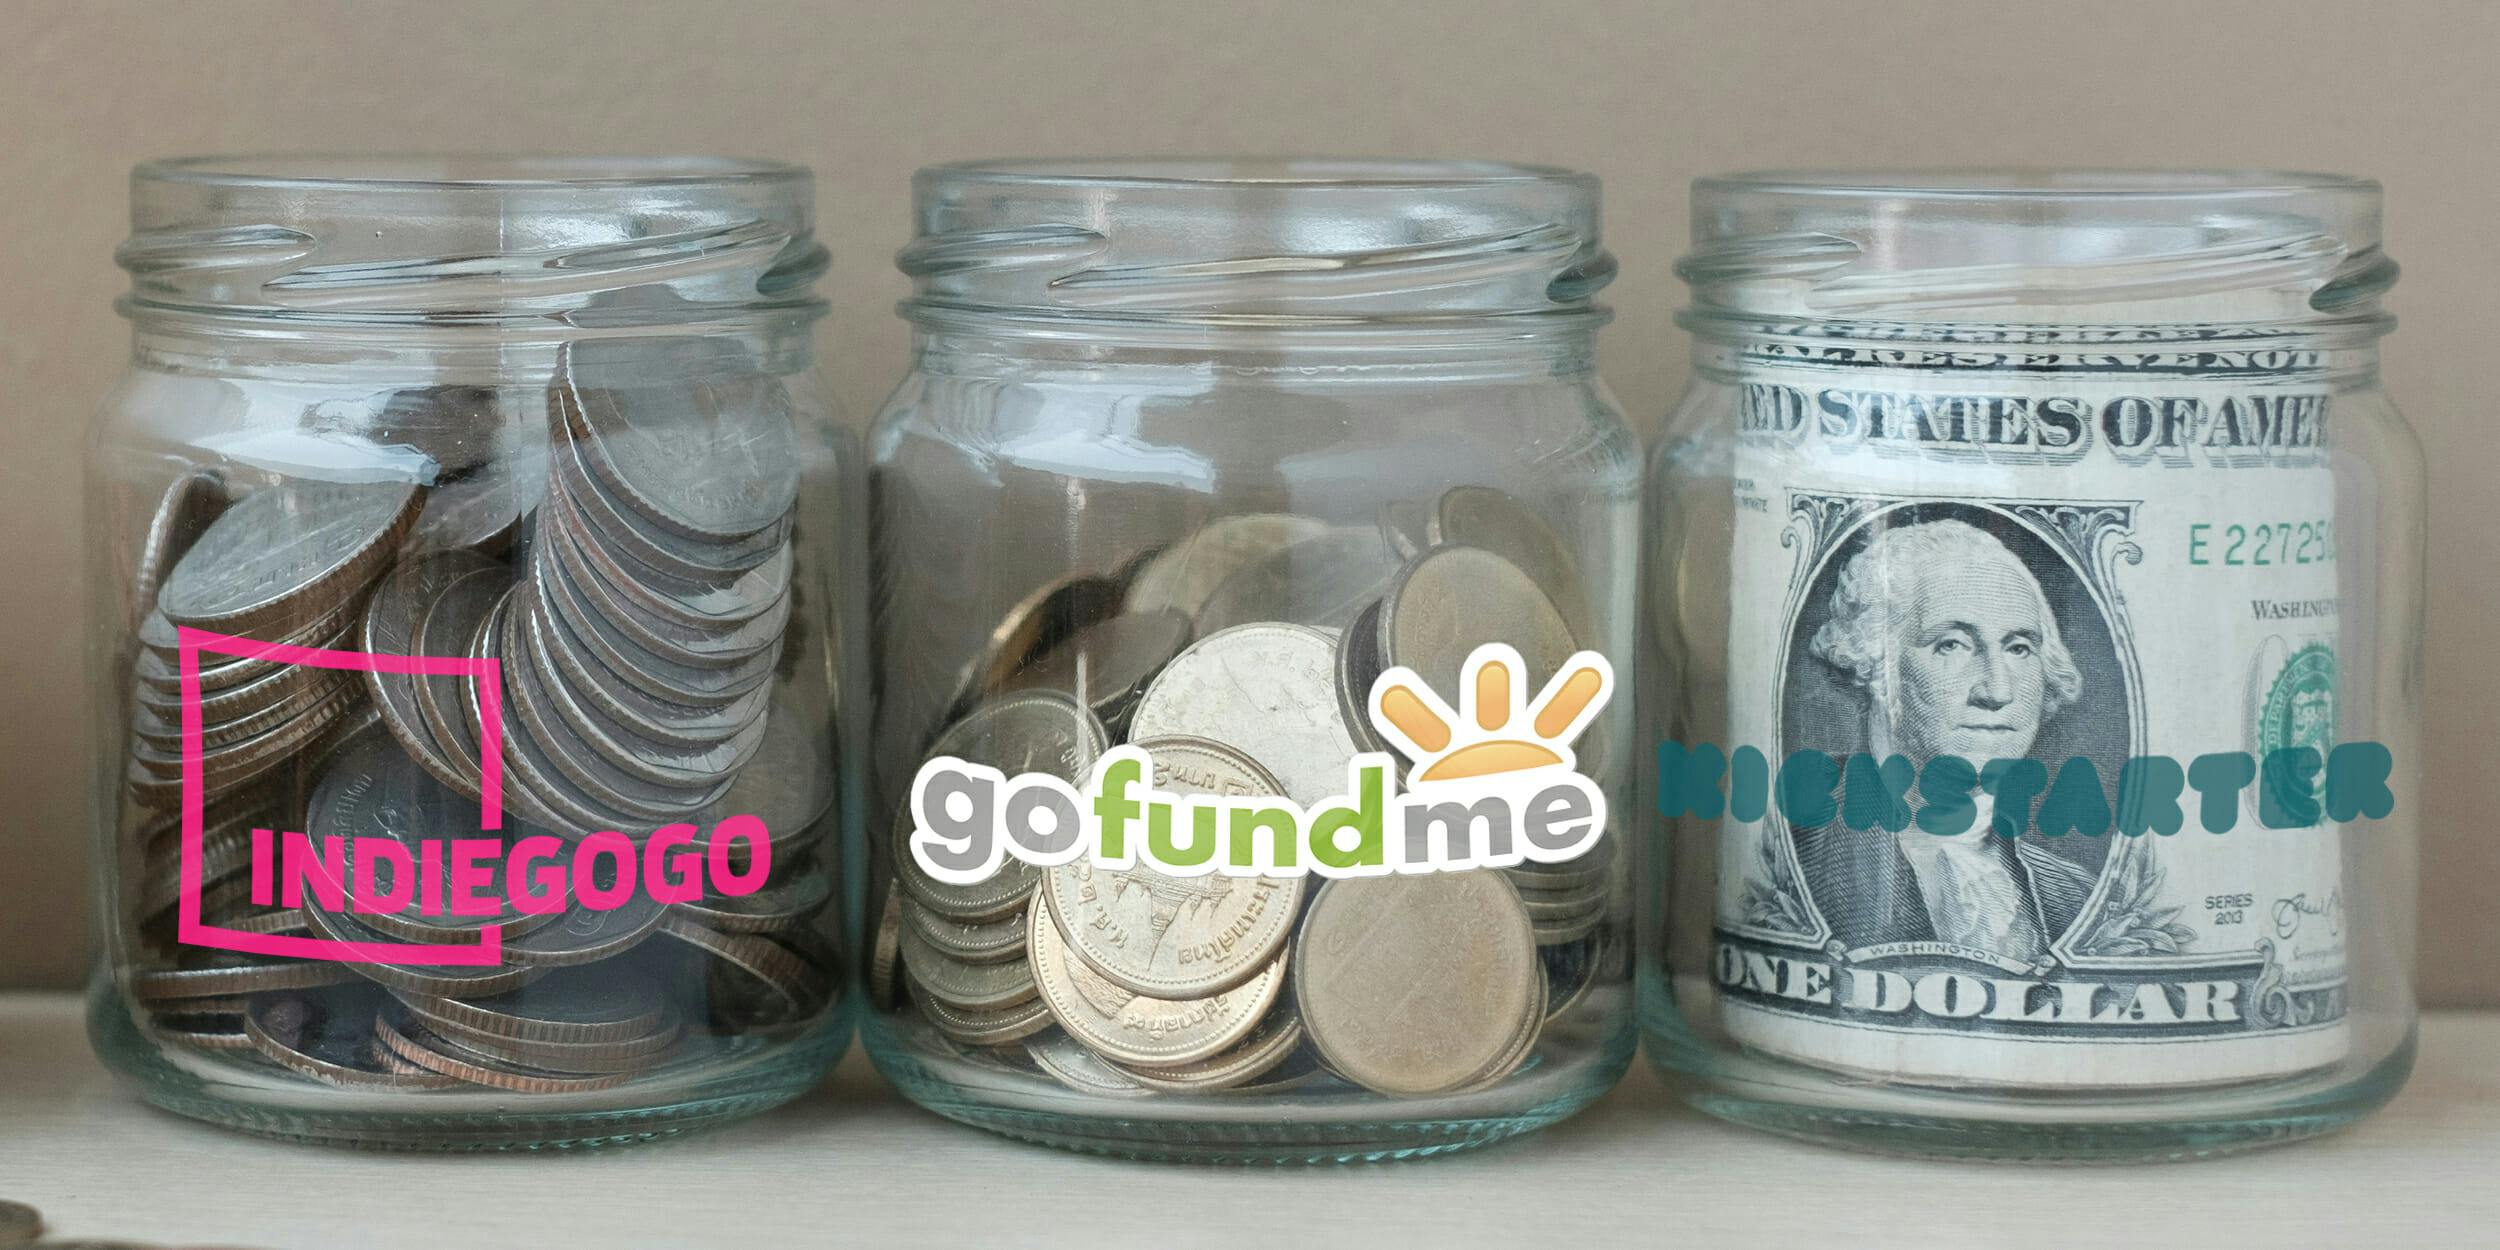 gofundme alternatives : Change jars labeled with Indiegogo, gofundme, and Kickstarter logos